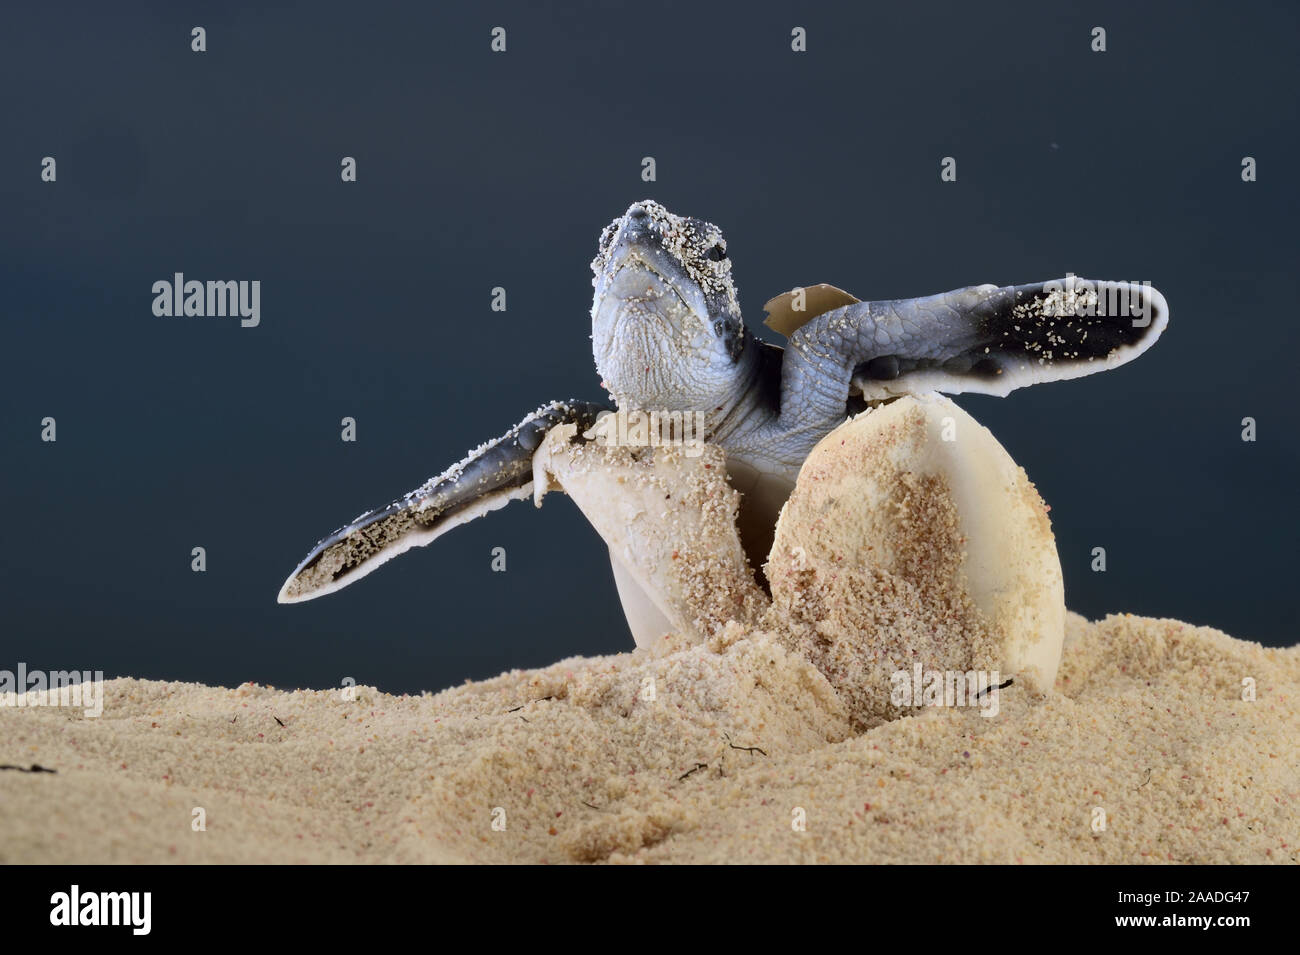 Nach einer Inkubationszeit von 45 bis 55 Tagen eine erste Hatchling" Suppenschildkröte (Chelonia mydas) ergibt sich aus dem Sand, Bonaire, Leeward Antillen, Karibik, Niederländische Antillen Stockfoto